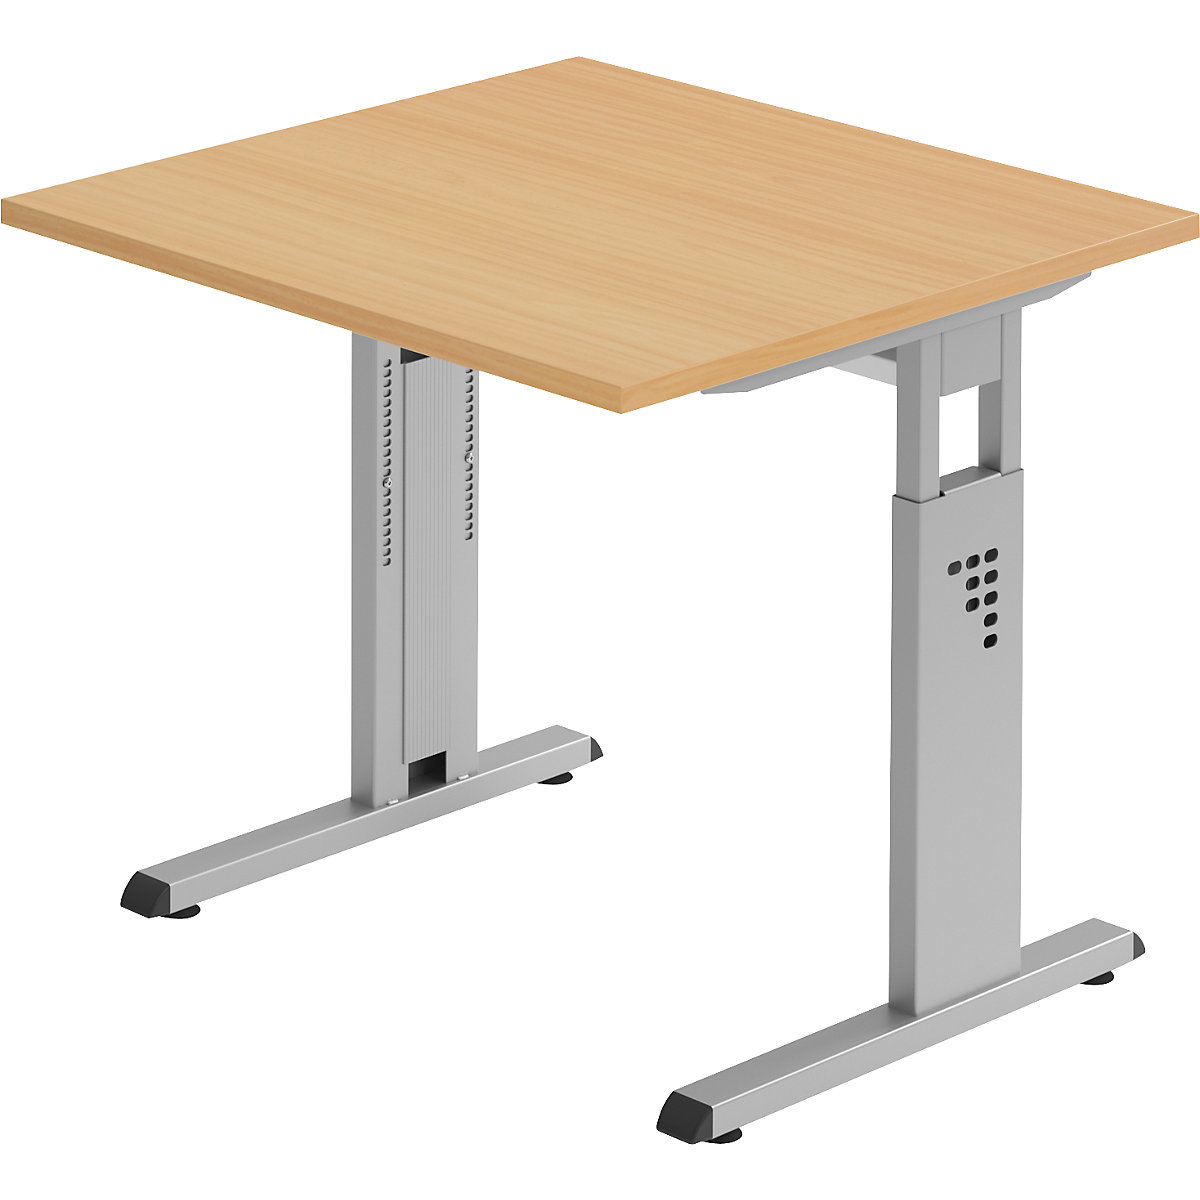 FINO Pisaći stol s postoljem u obliku slova C, namještanje visine u rasponu od 680 – 760 mm, ŠxD 800 x 800 mm, imitacija bukve